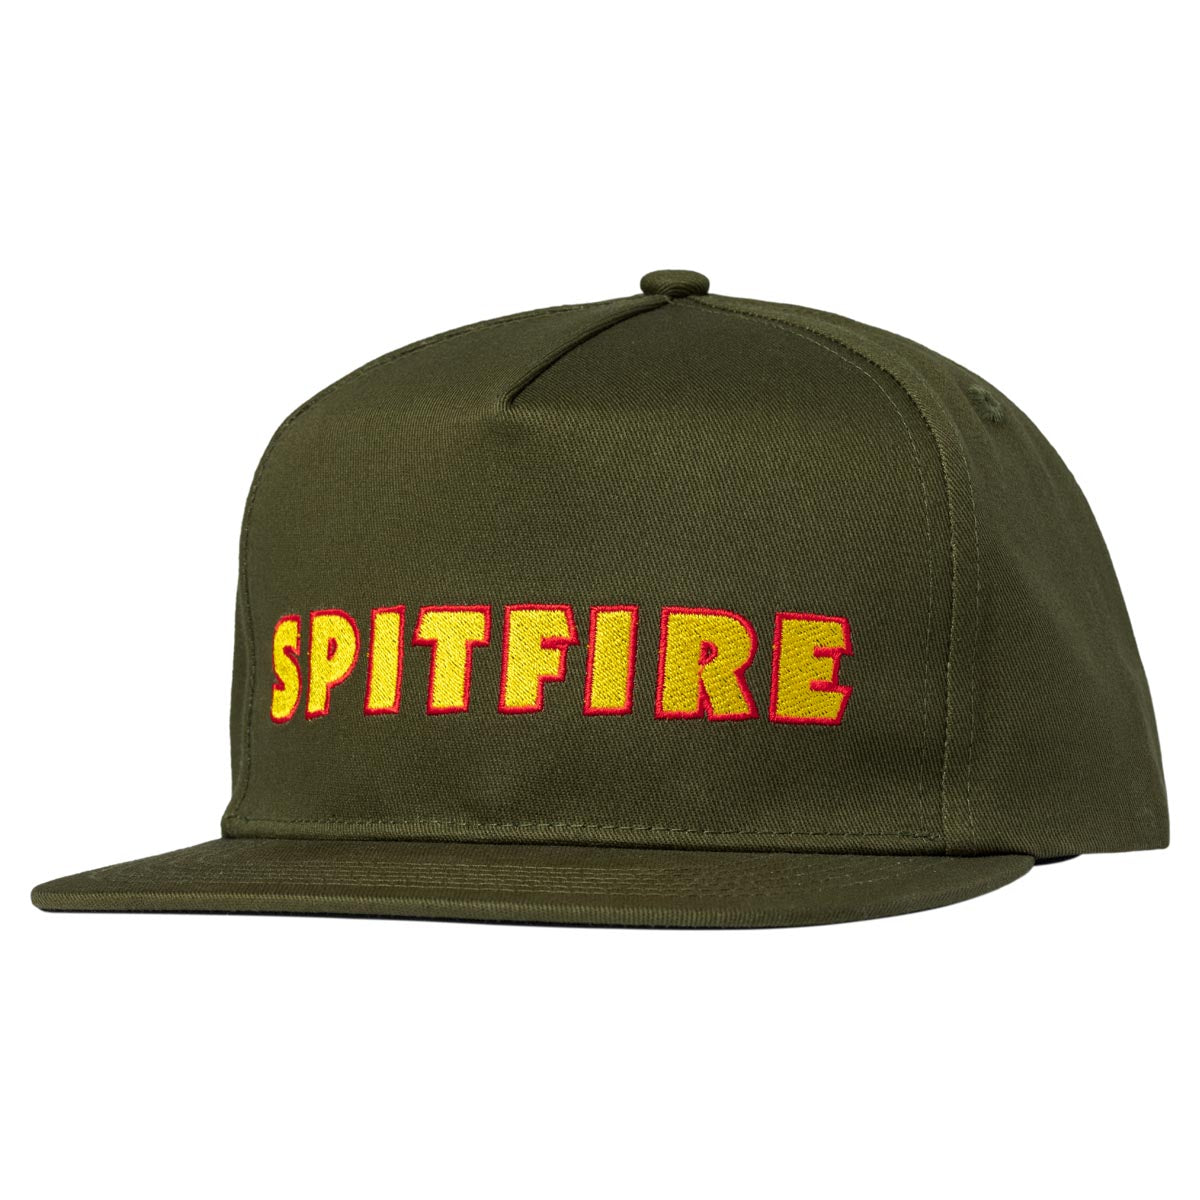 Spitfire Ltb Script Snapback Hat - Olive image 1